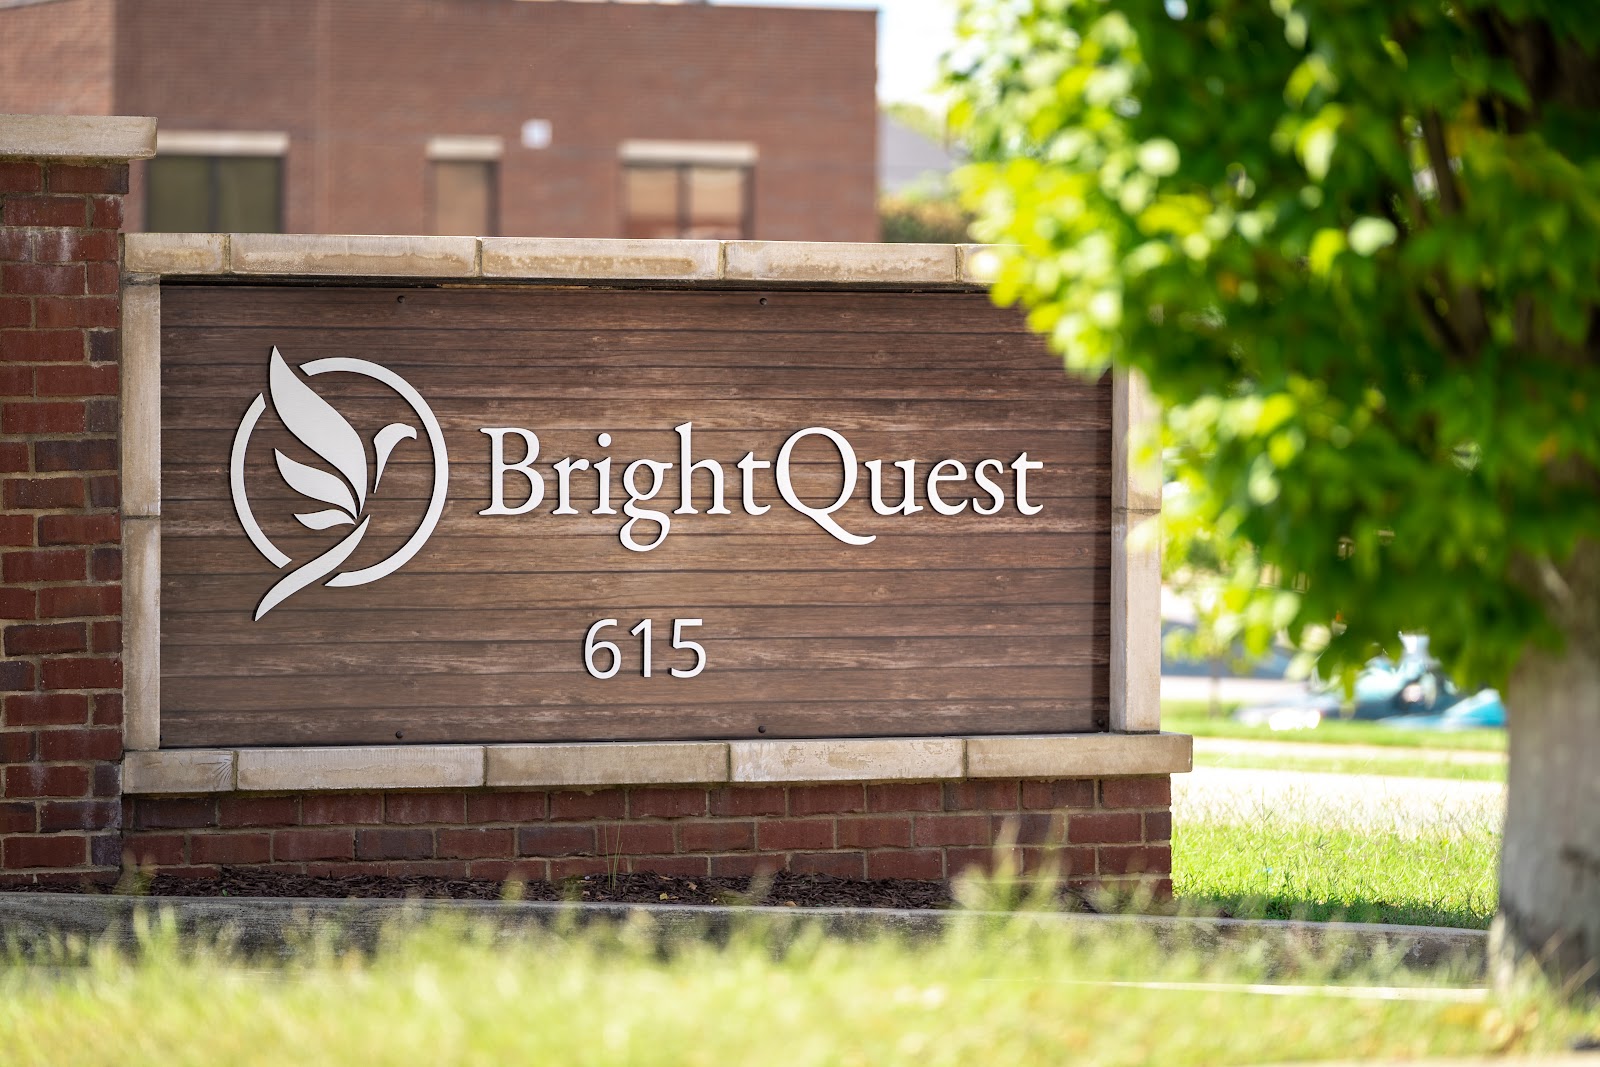 BrightQuest Treatment Centers